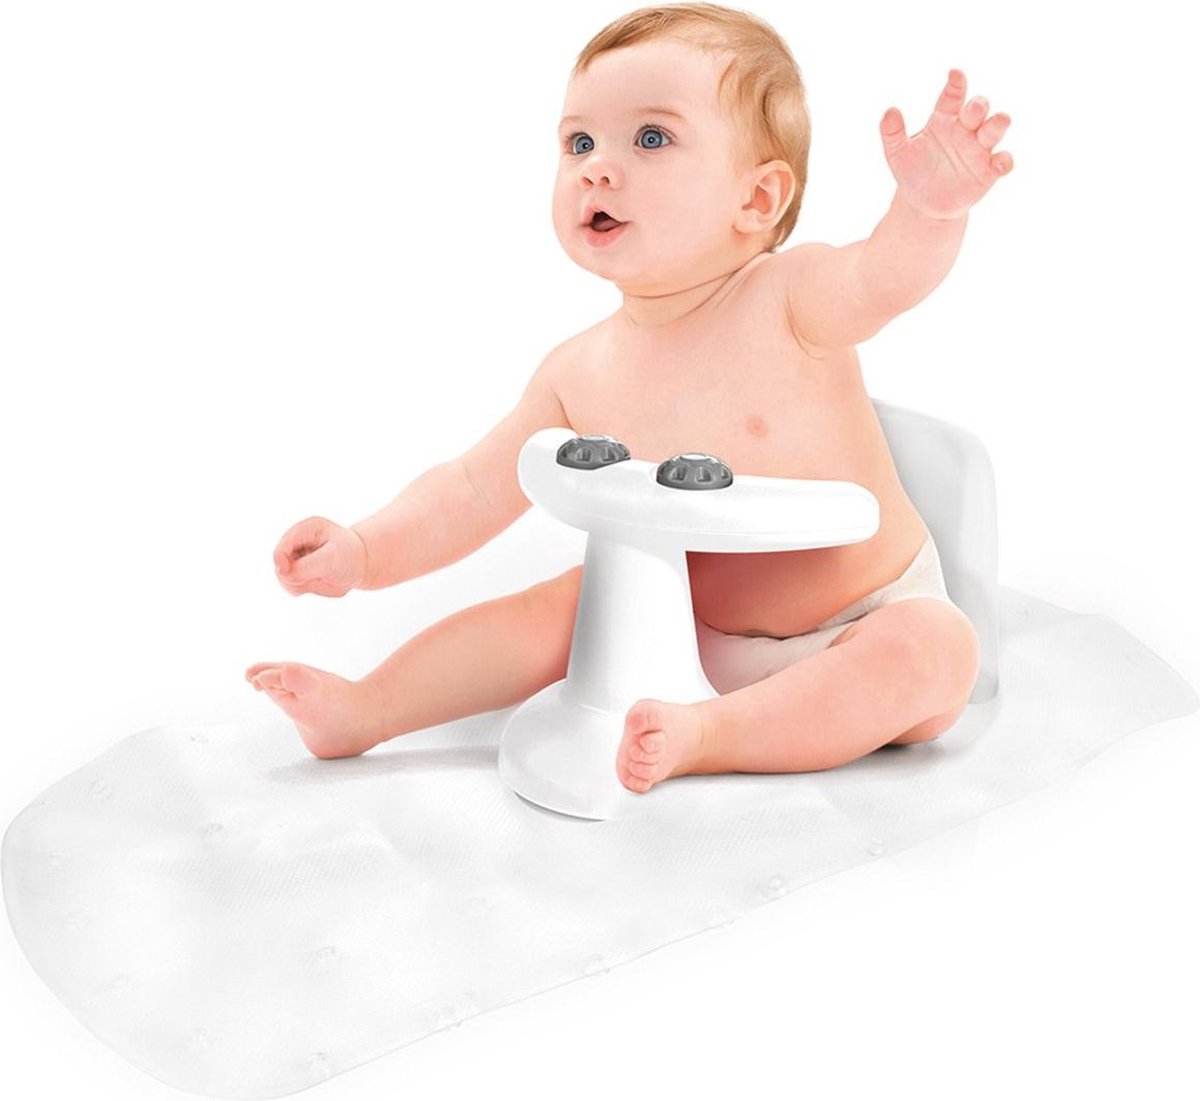 Anneau de bain - Siège de bain - tapis antidérapant - baignoire bébé - bébé  - enfant | bol.com